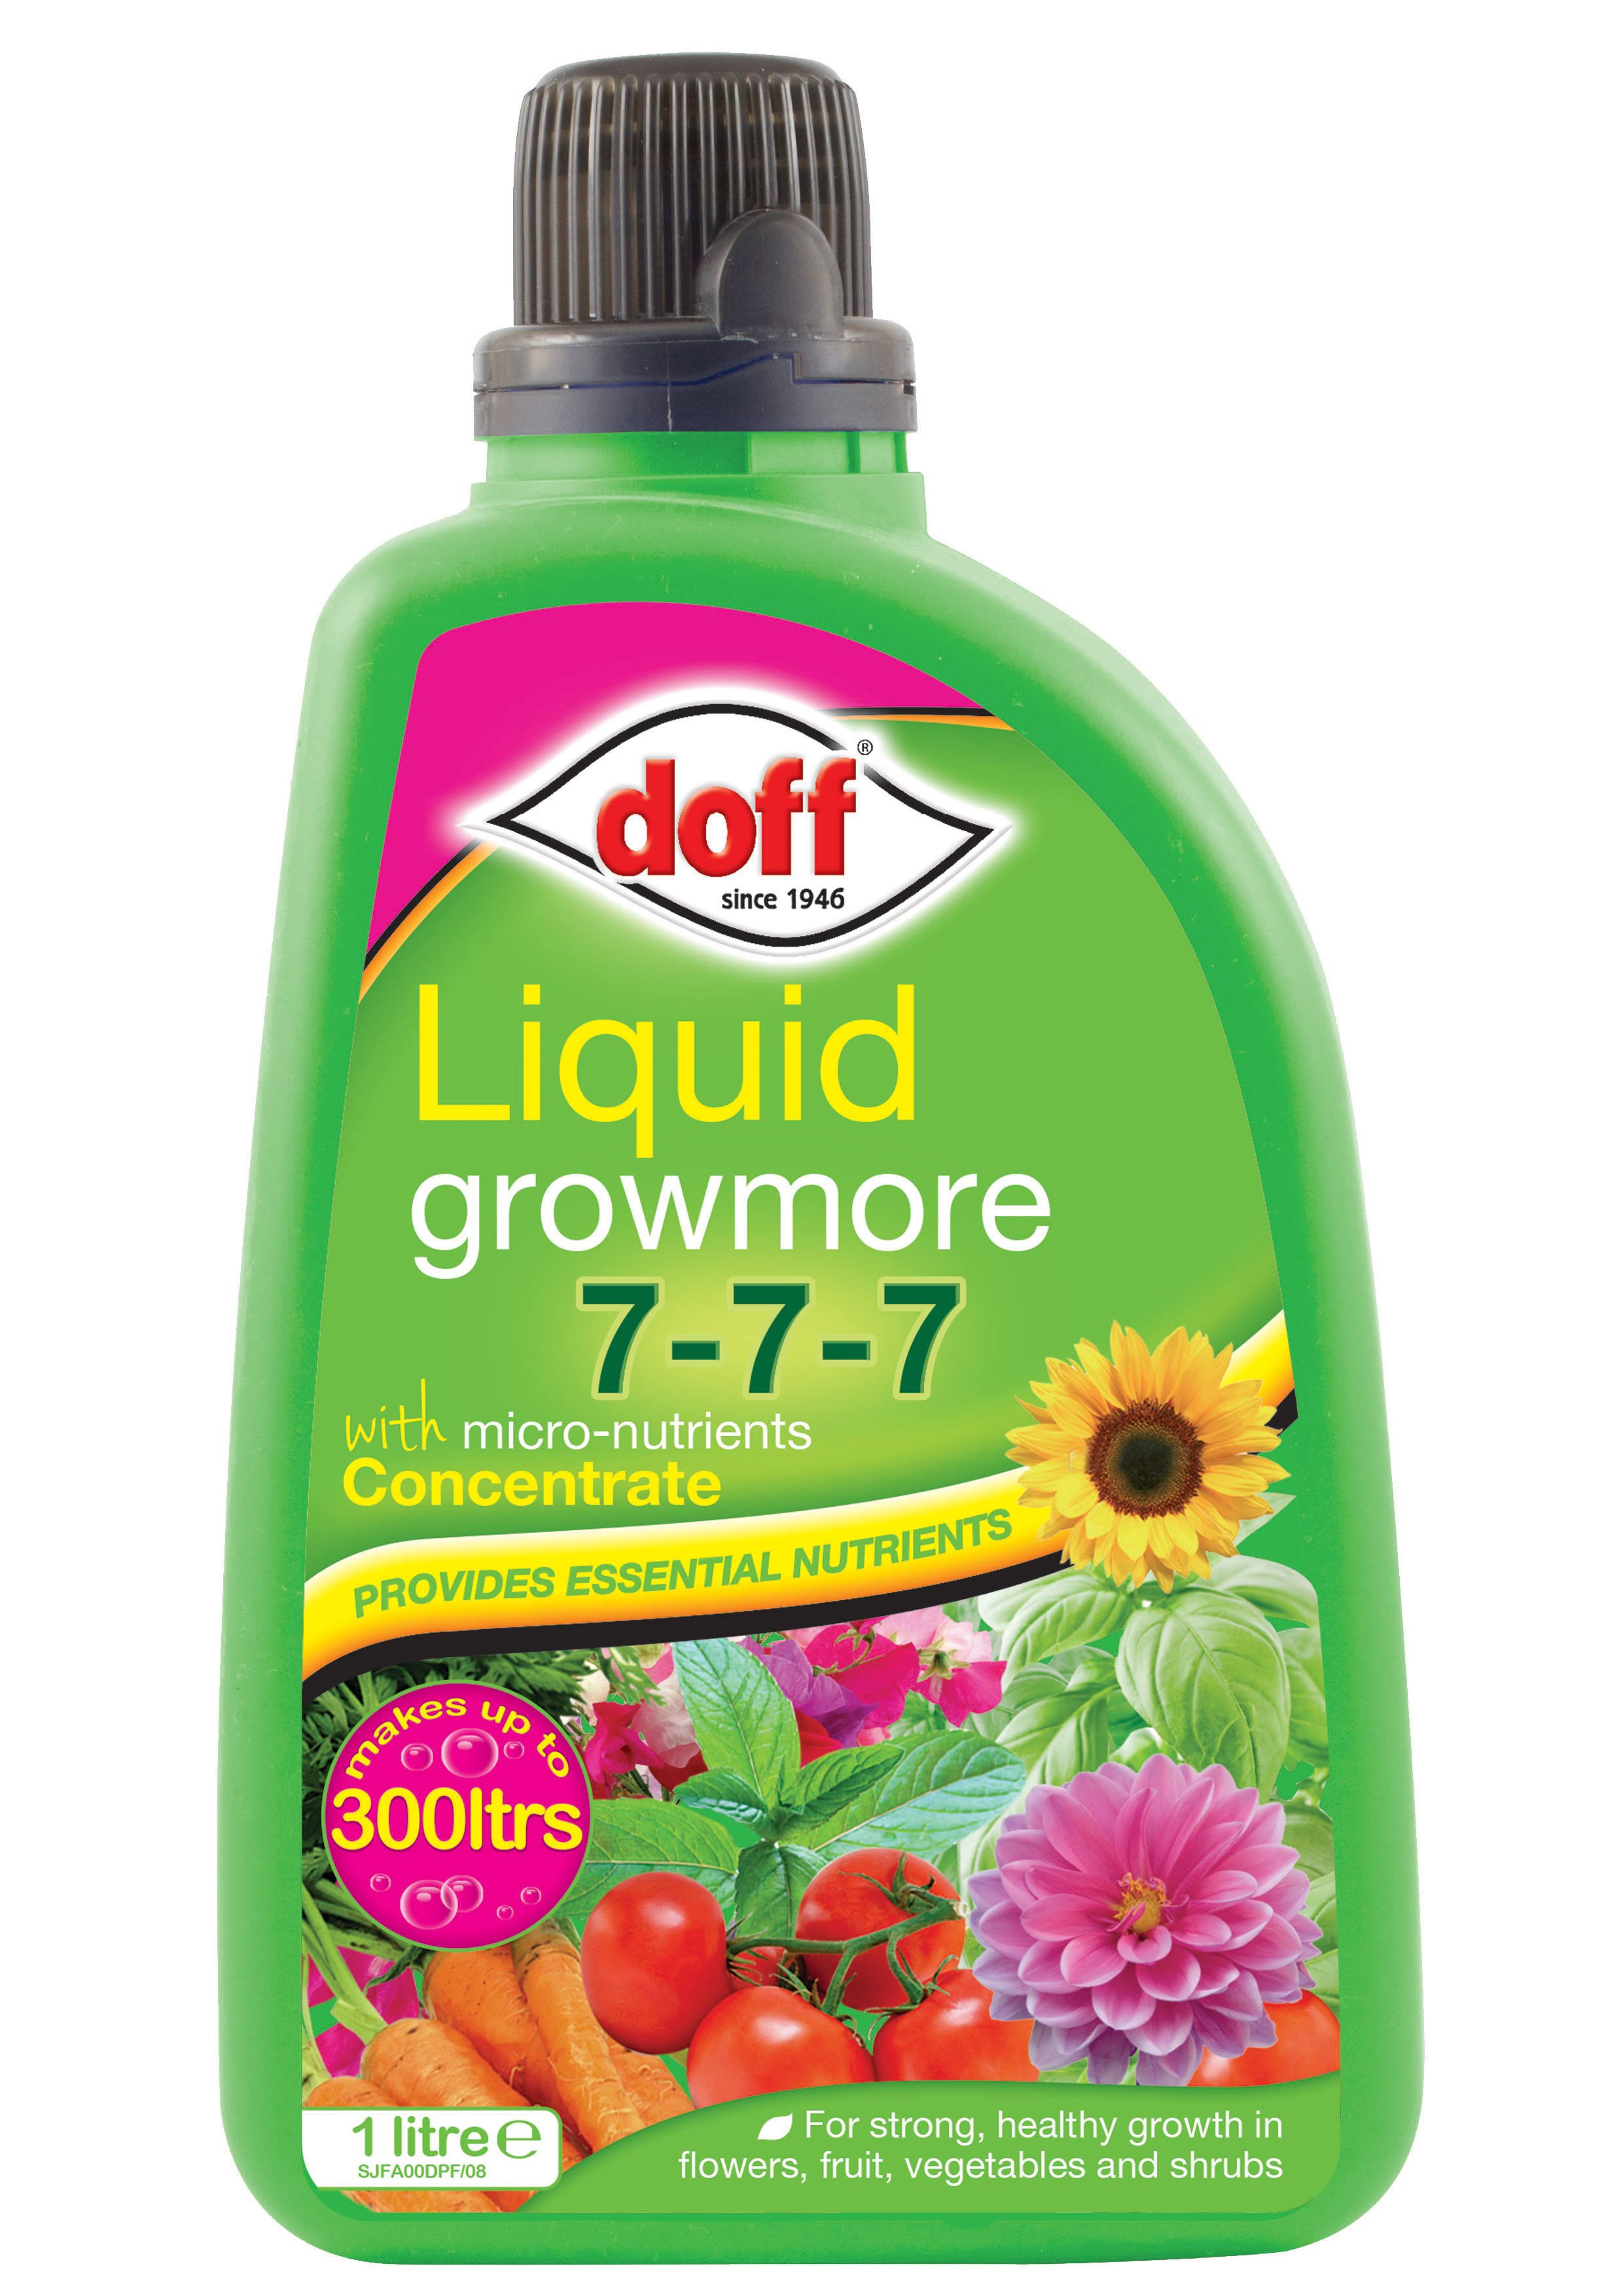 Doff Liquid Growmore